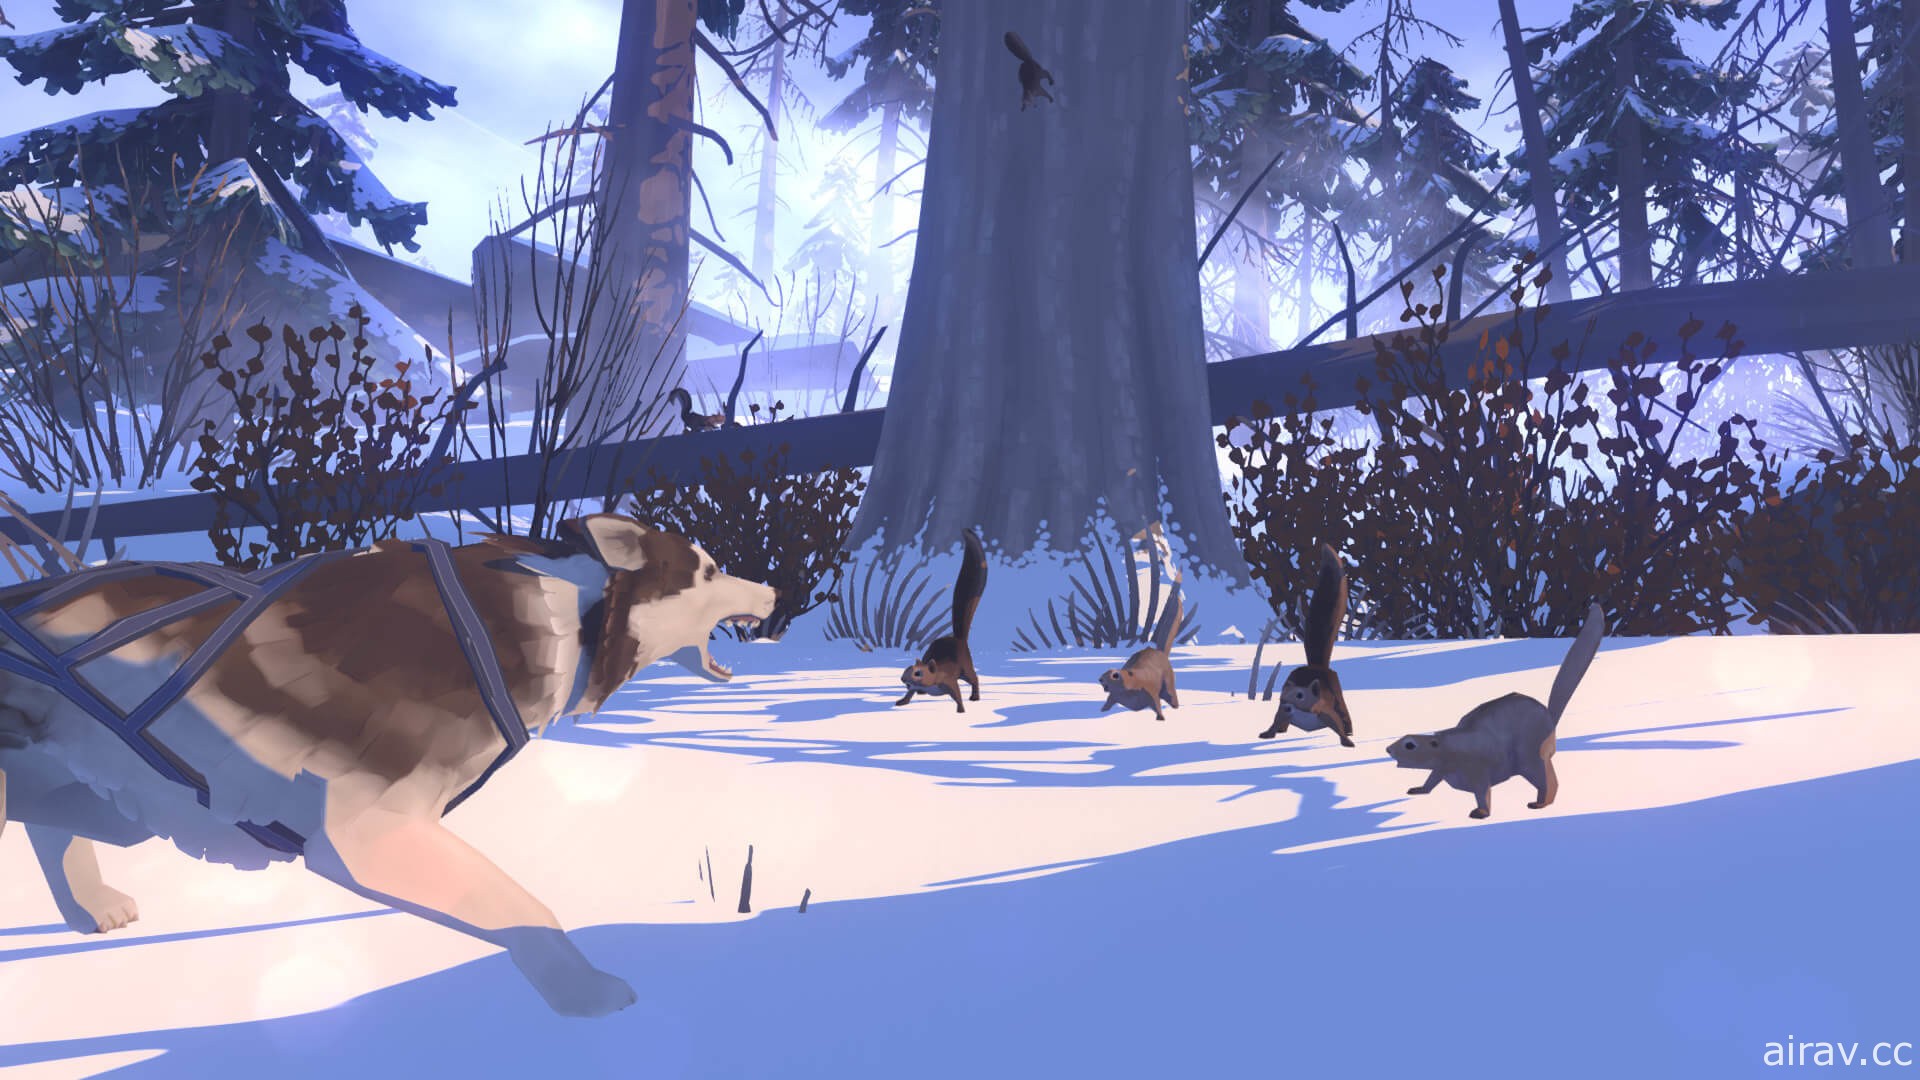 故事導向生存遊戲《紅燈籠 The Red Lantern》10 月底推出 與雪橇狗在荒野中冒險